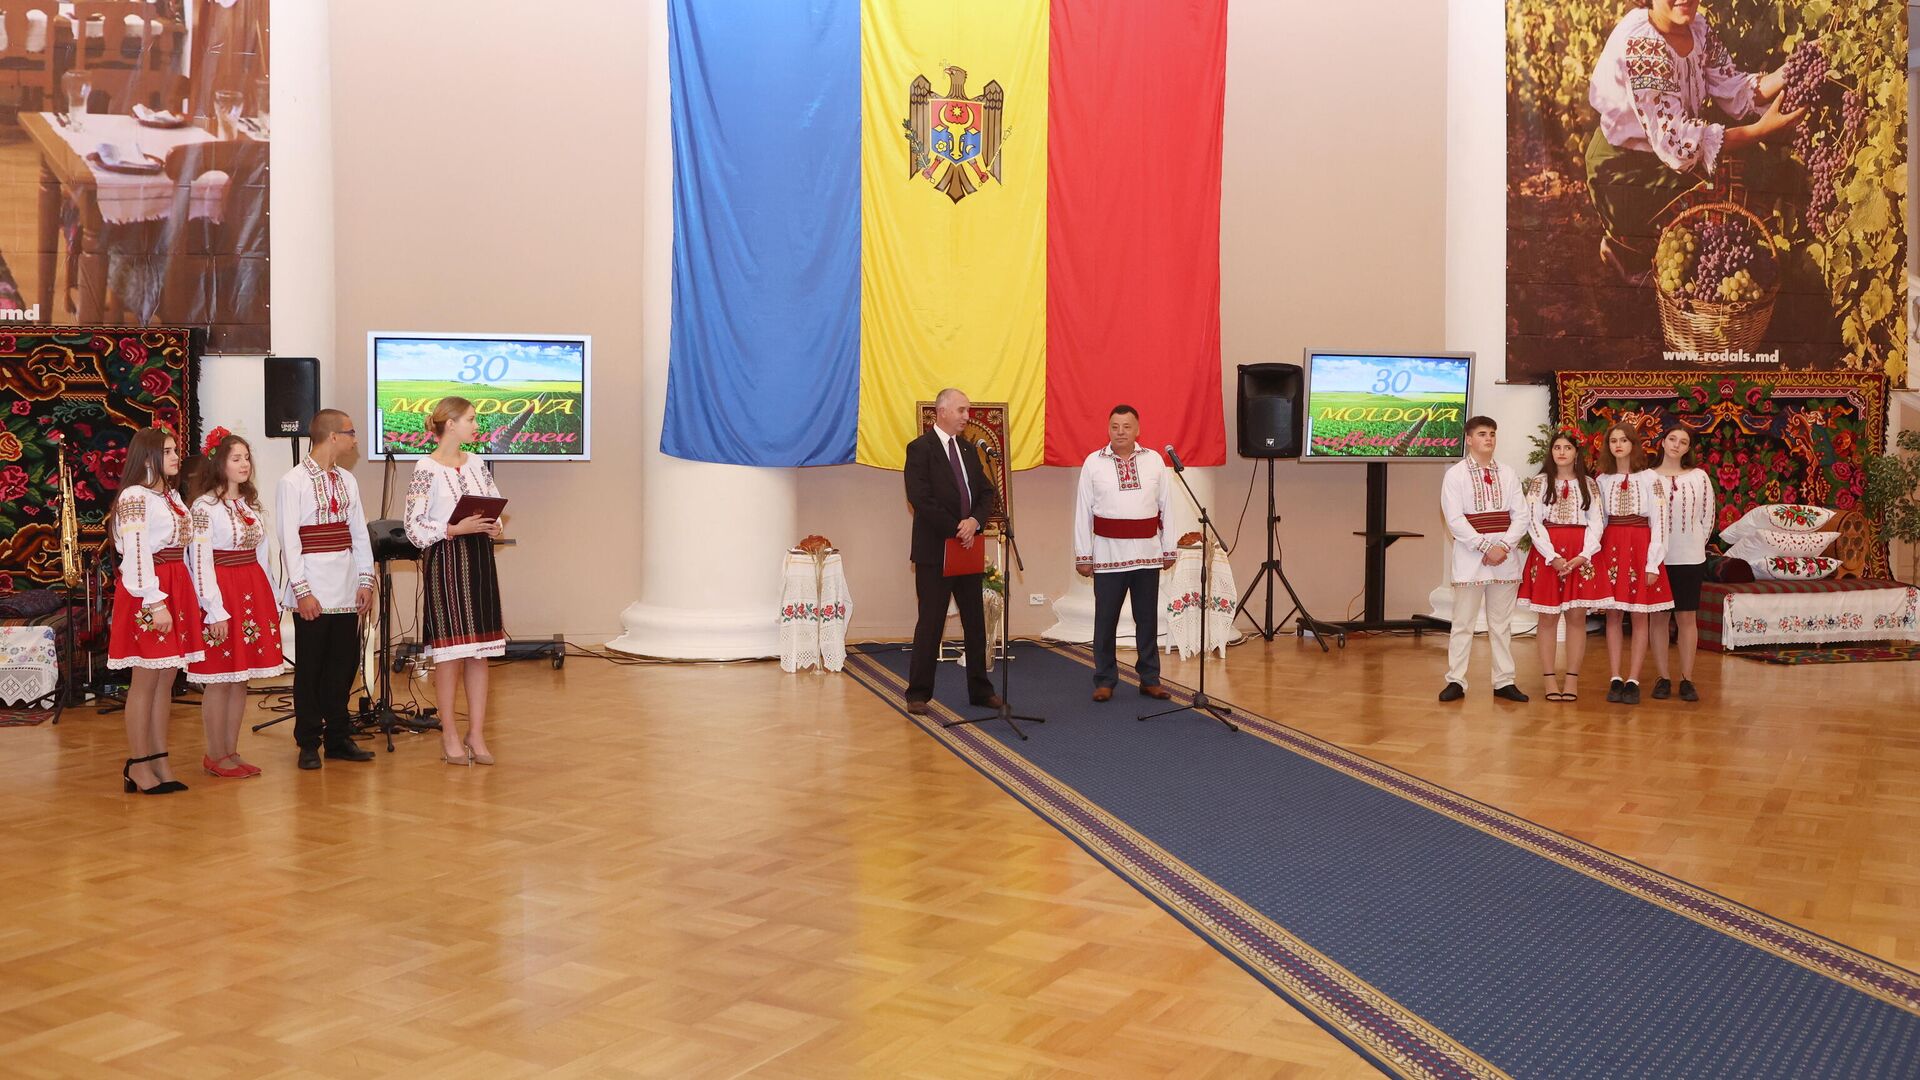 Как праздновали  день независимости Республики Молдовы в Таврическорм дворце - Sputnik Молдова, 1920, 27.08.2021